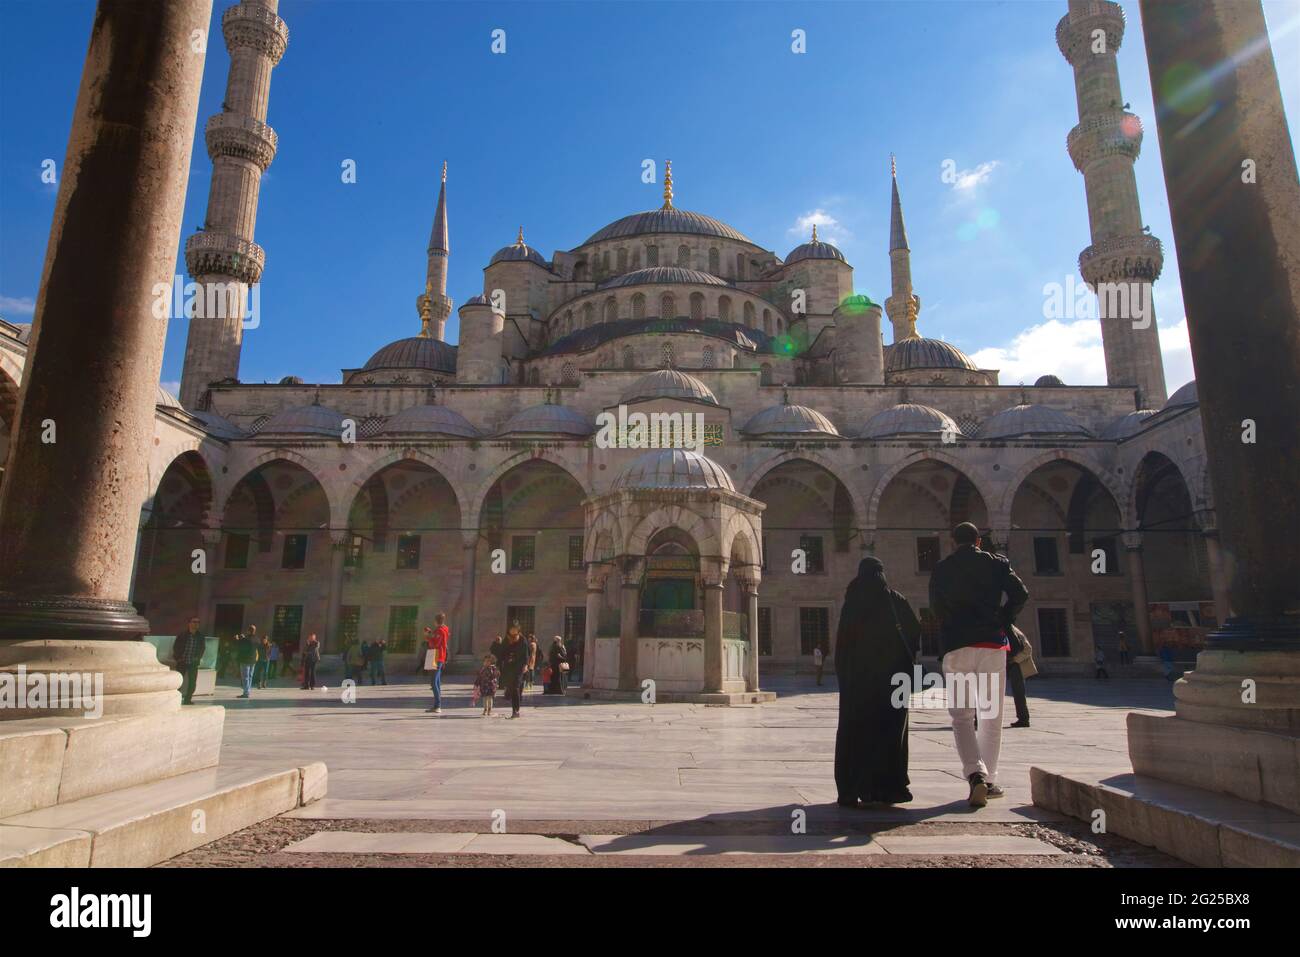 Ingresso alla Moschea del Sultano Ahmed (in turco: Sultano Ahmet Camii), conosciuta anche come la Moschea Blu. Una moschea del venerdì dell'epoca ottomana situata a Istanbul, Turchia Foto Stock